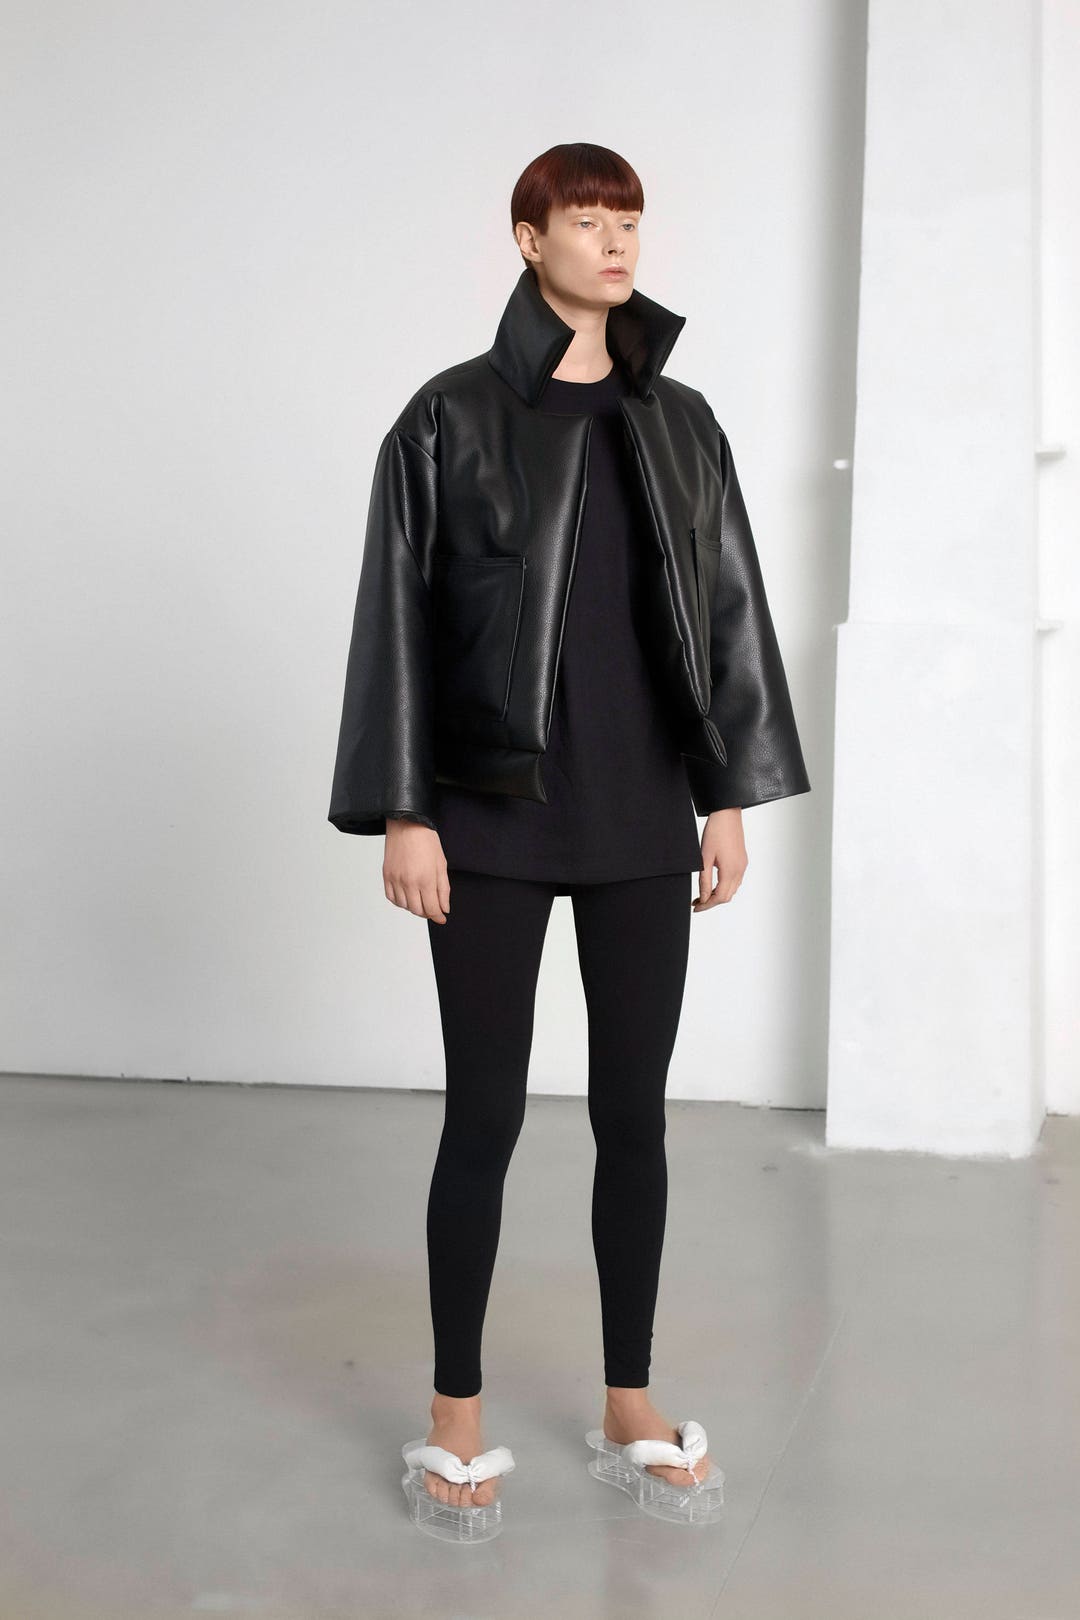 Sustainable Fashion/ Unisex Style Jacket/ in Faux Leather - Etsy